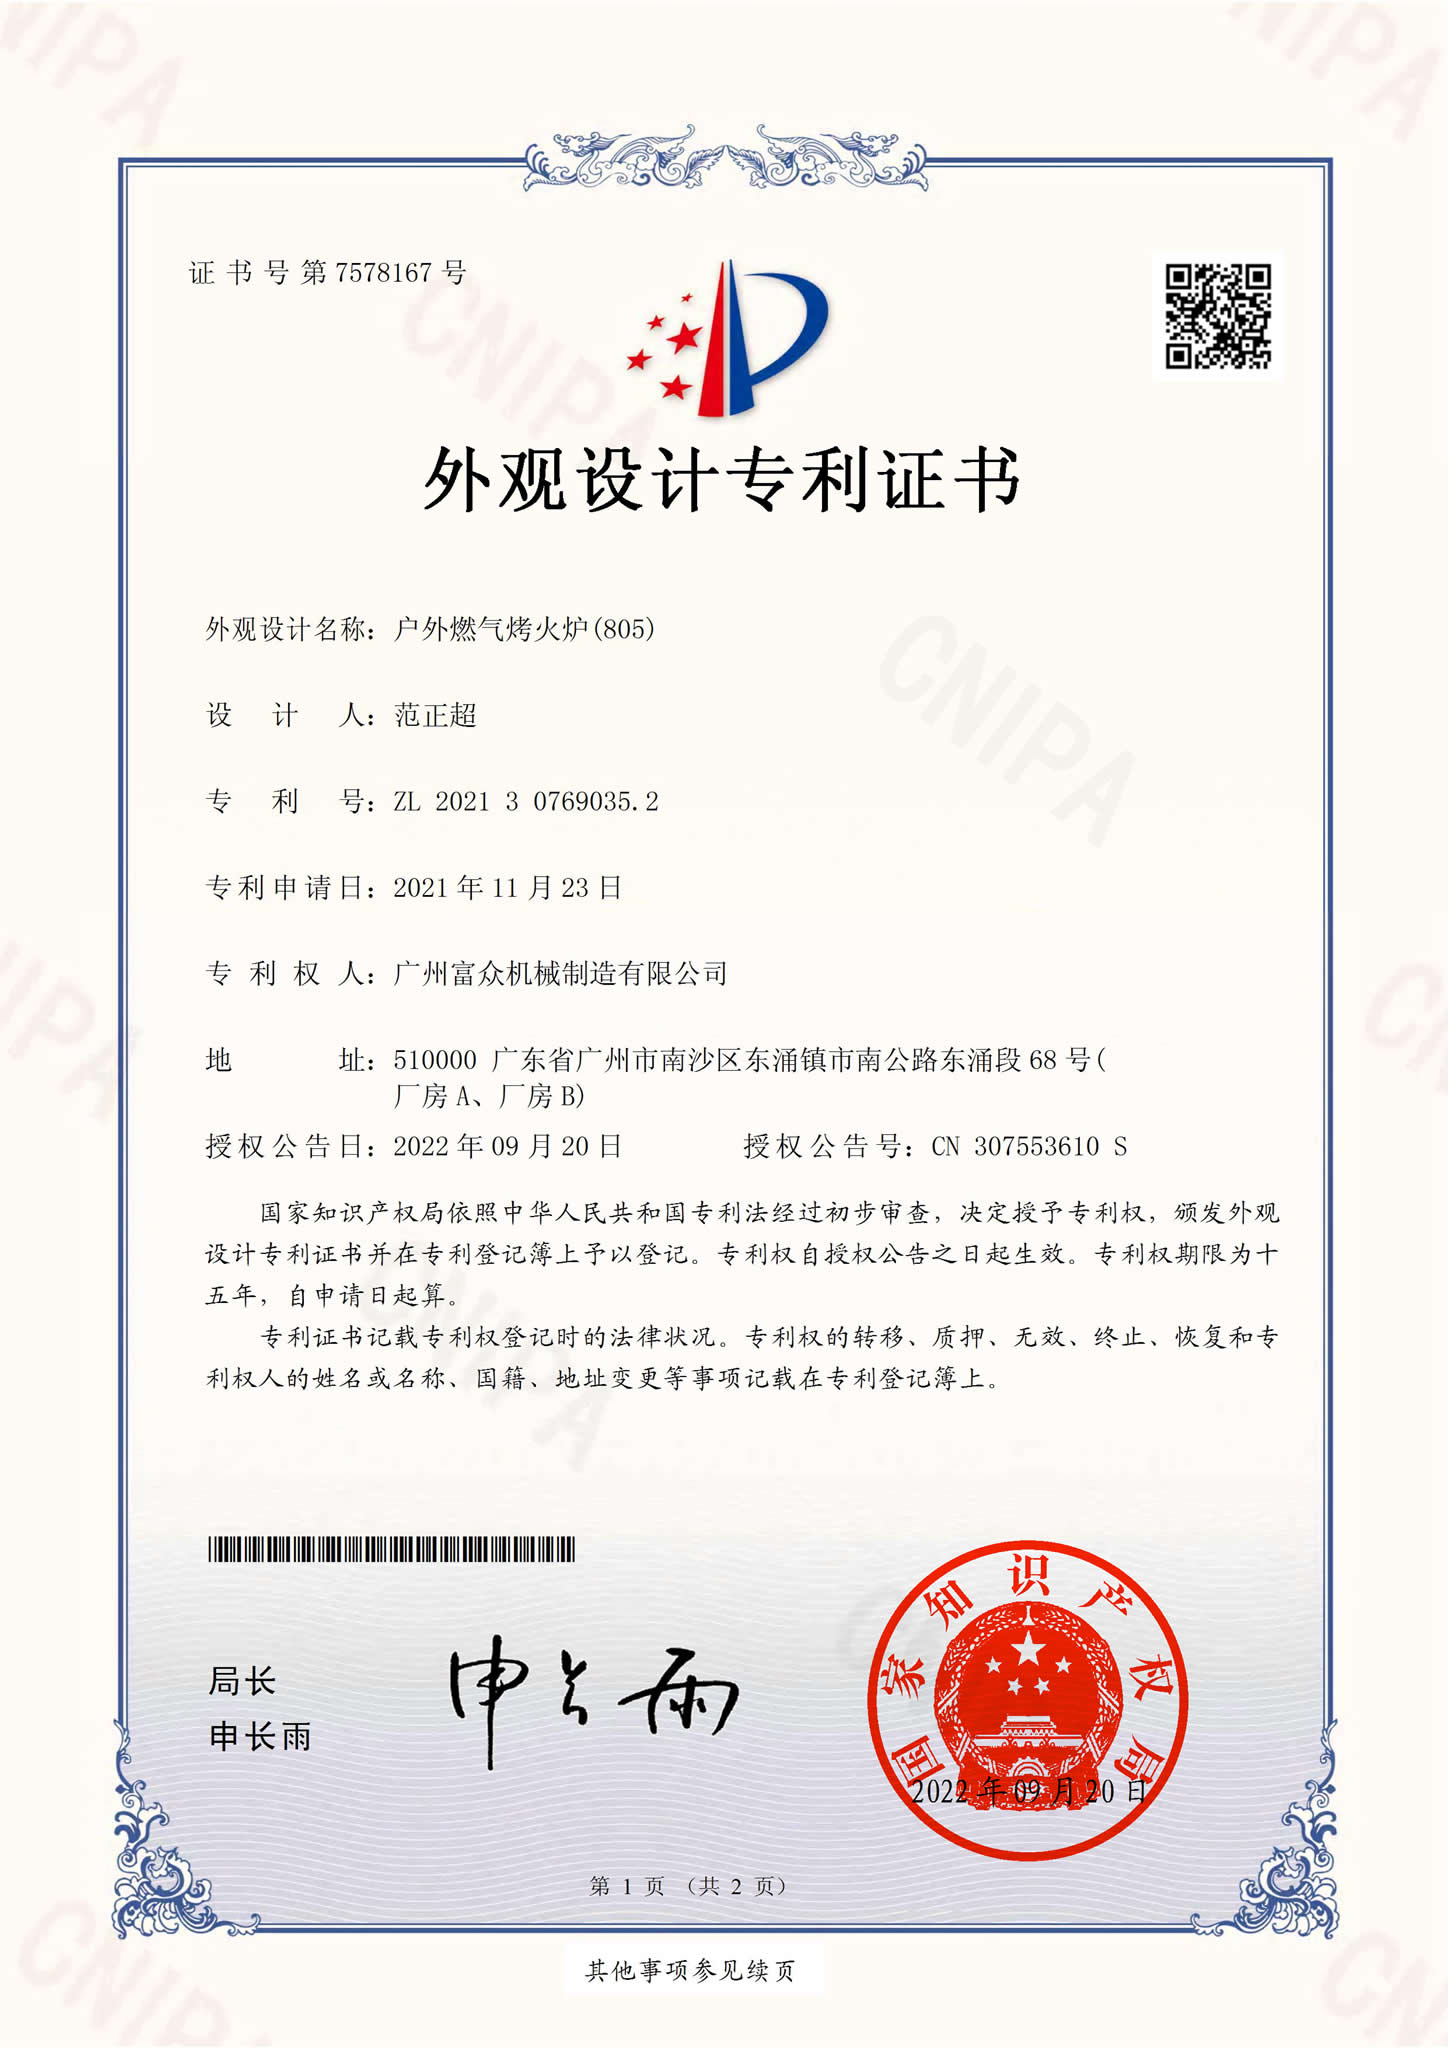 户外燃气烤火炉(805)外观设计专利证书(签章)_00